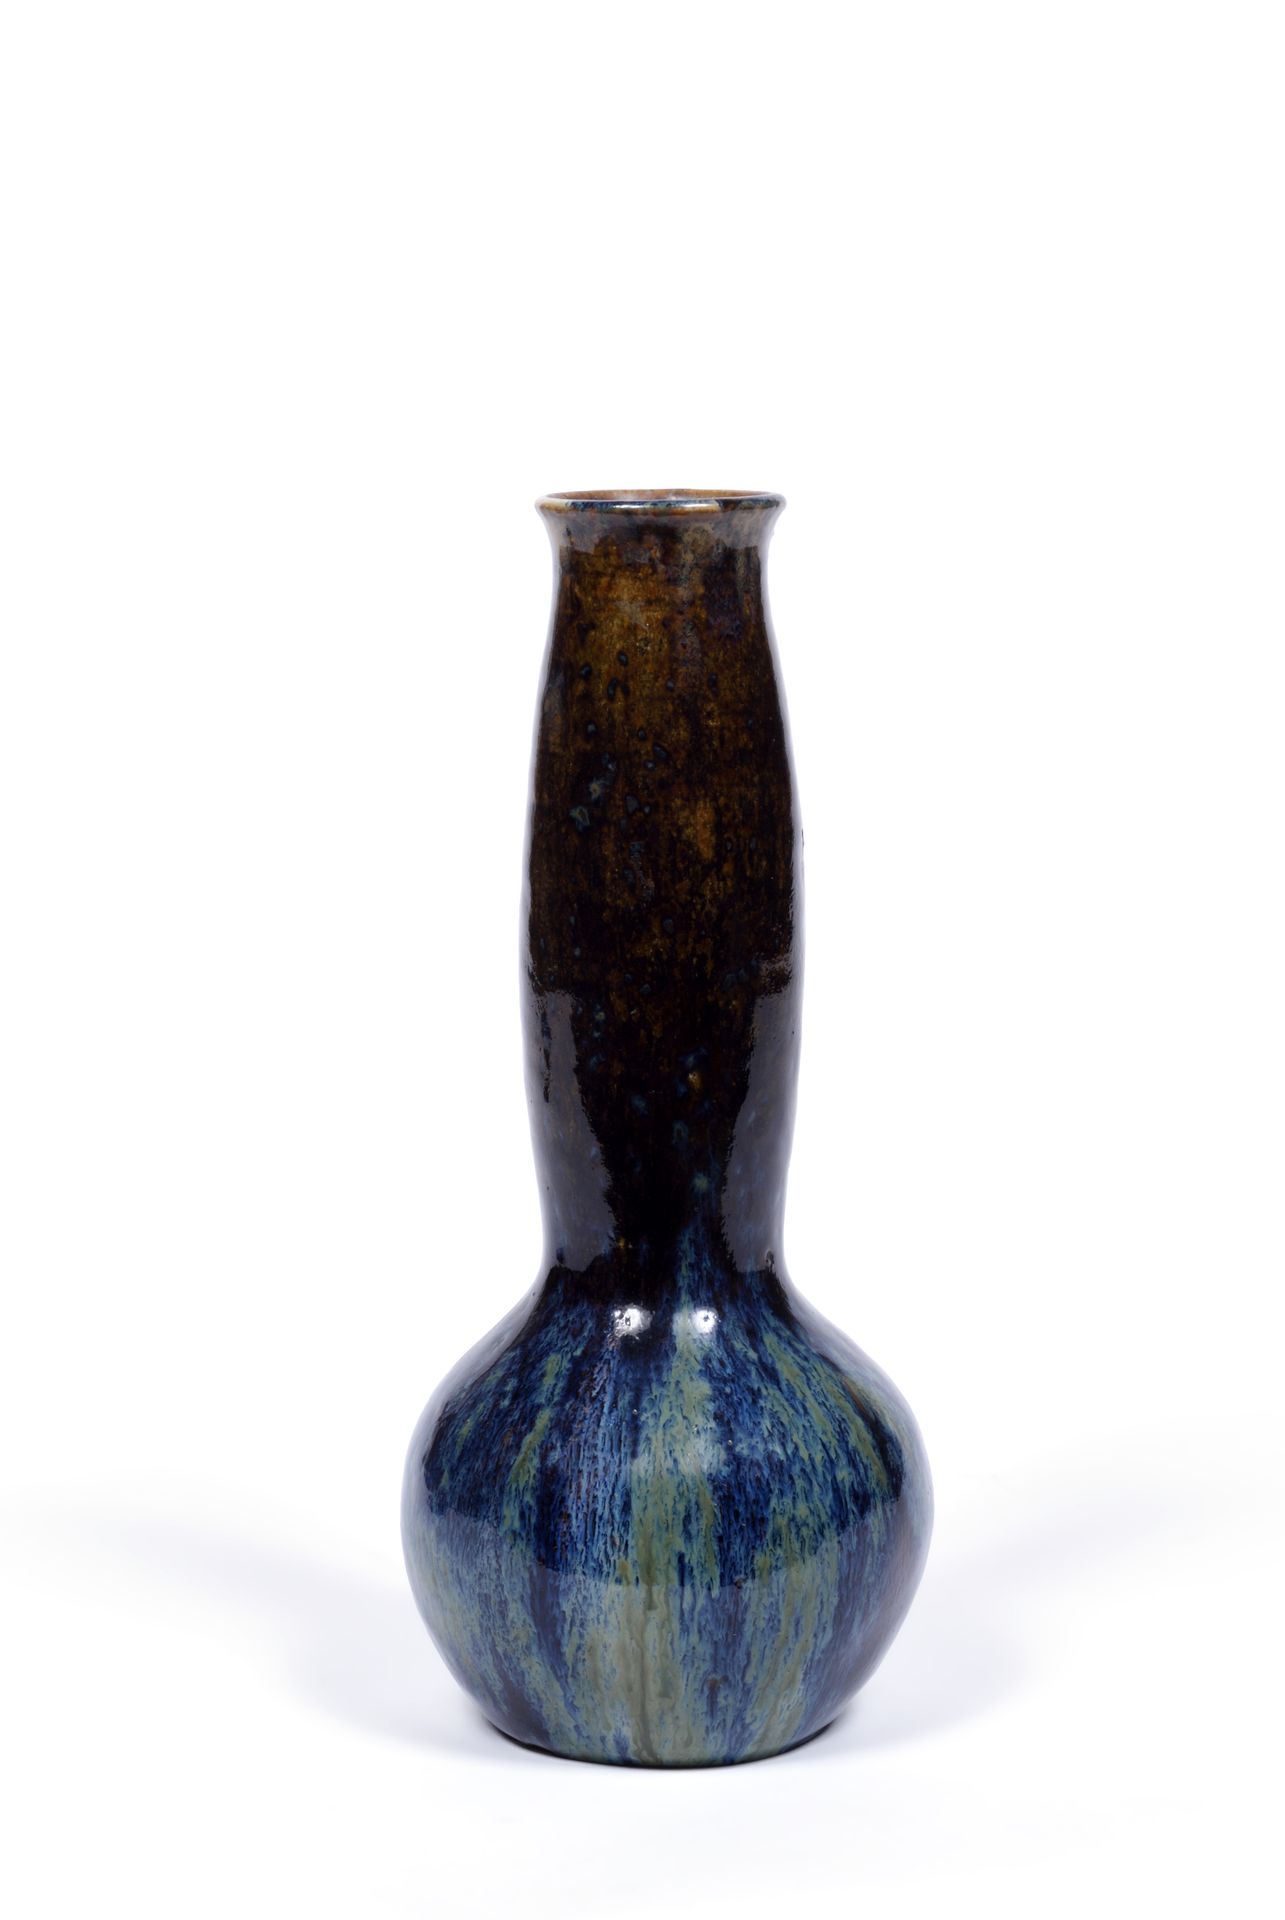 DALPAYRAT DALPAYRAT
Vase en grès émaillé, signé au revers
H : 24 cm